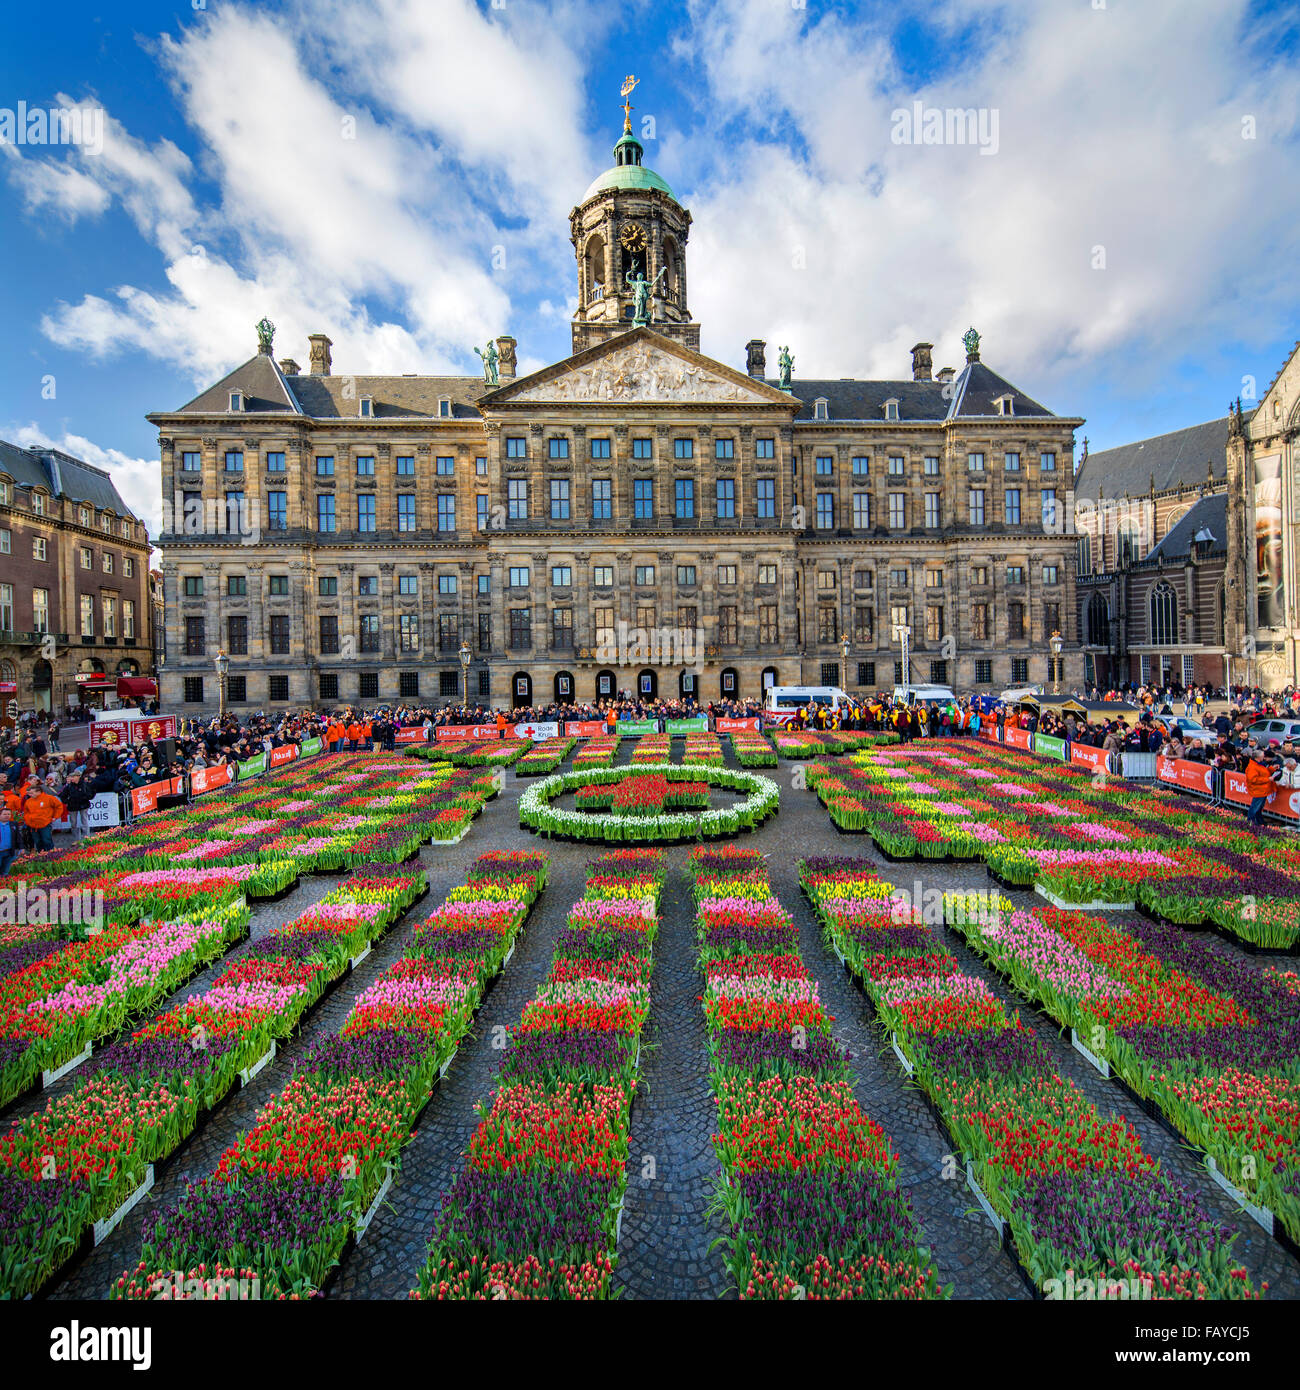 Pays-bas, Amsterdam, début de saison des tulipes. La Place du Dam. Palais  Royal. Les gens peuvent choisir les tulipes pour gratuitement. Journée  nationale Tulip Photo Stock - Alamy